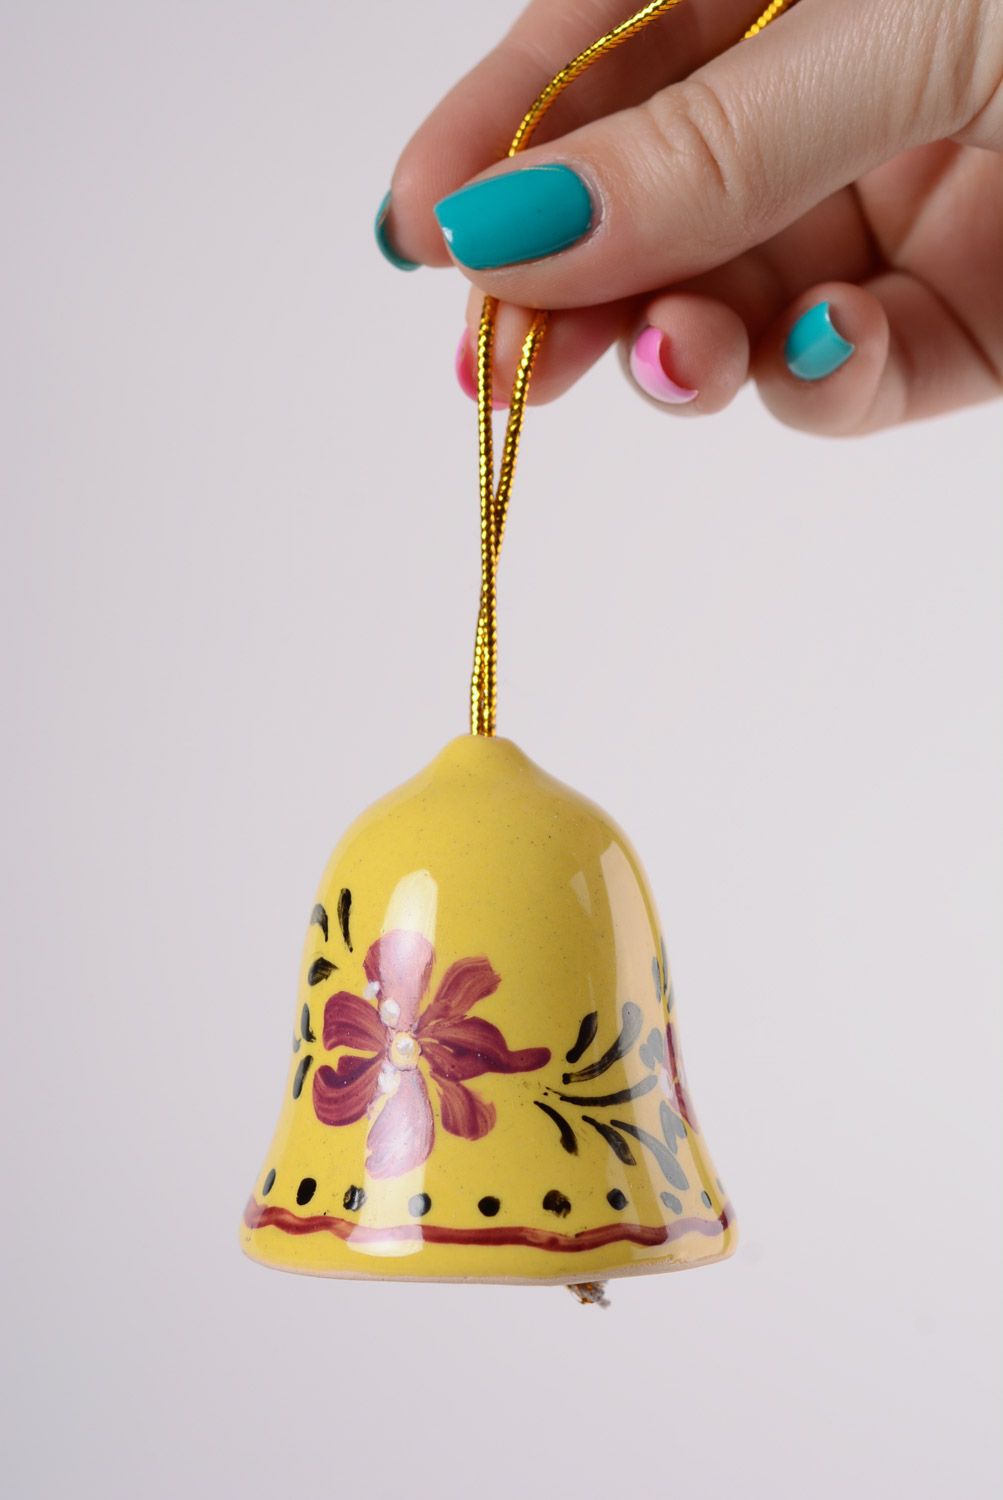 Глиняный колокольчик с росписью желтый красивый маленький майолика хенд мэйд фото 2